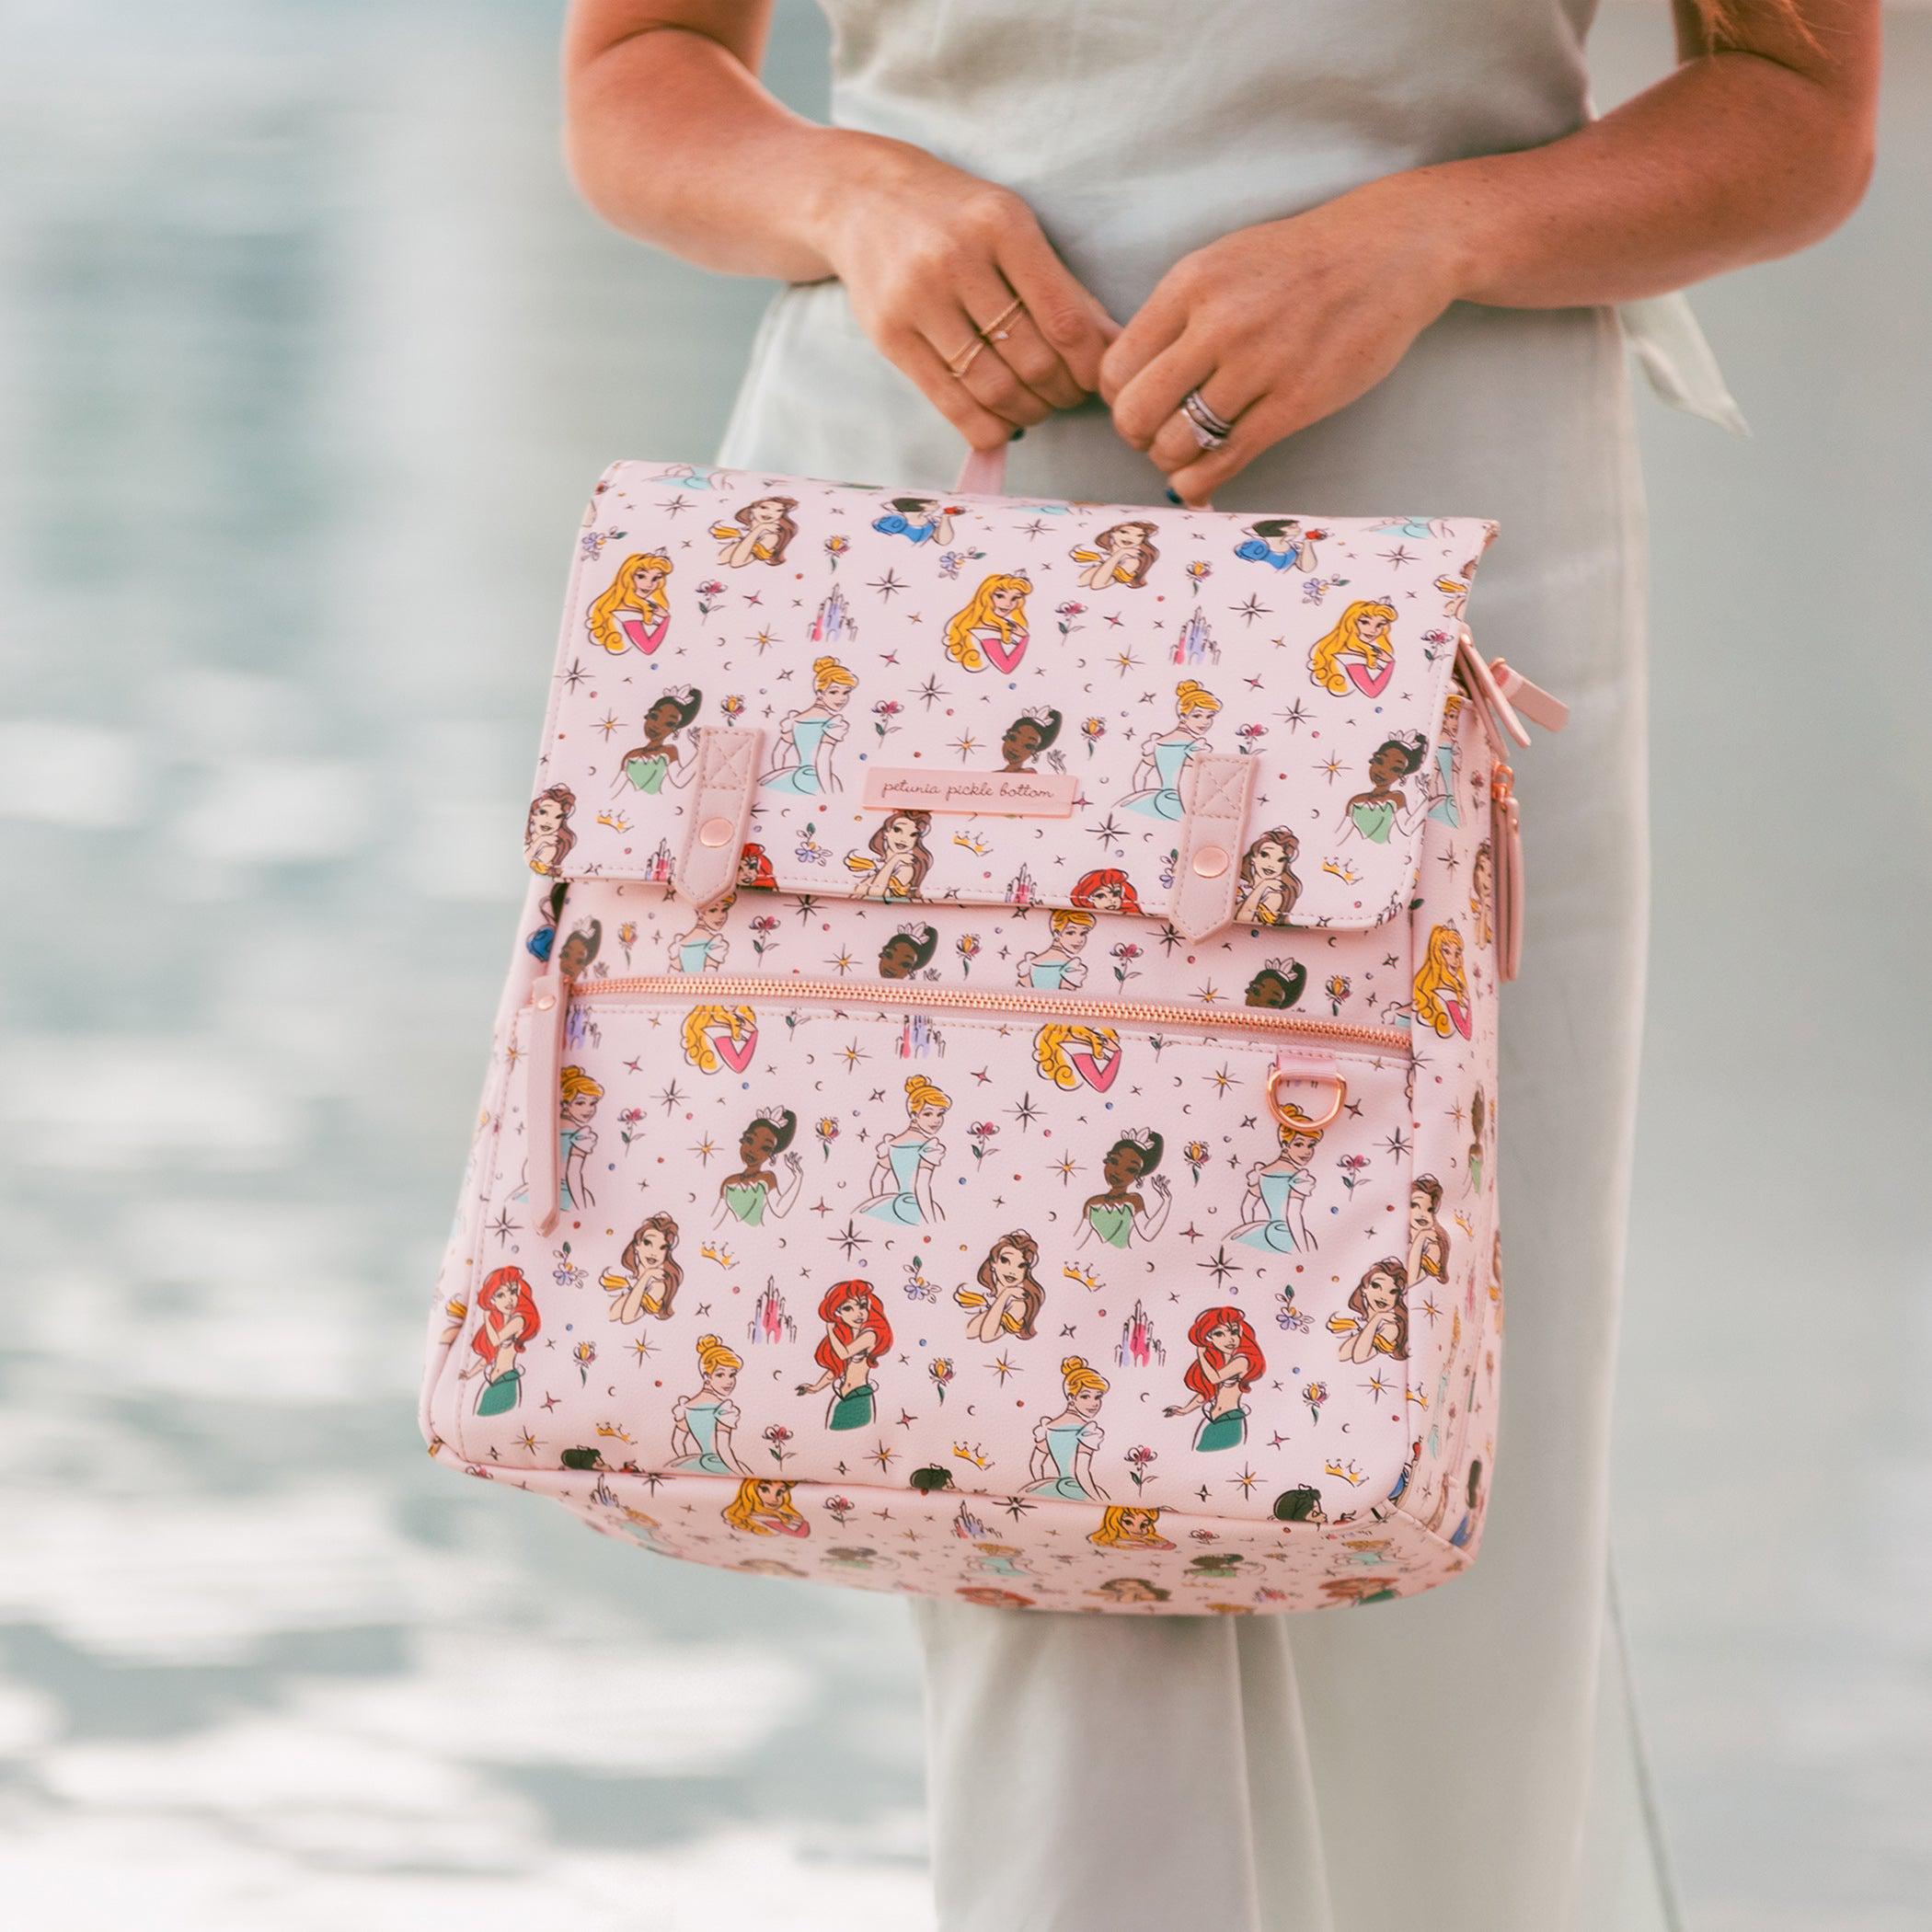 Petunia Pickle Bottom Meta Backpack Diaper Bag in Disney Princess